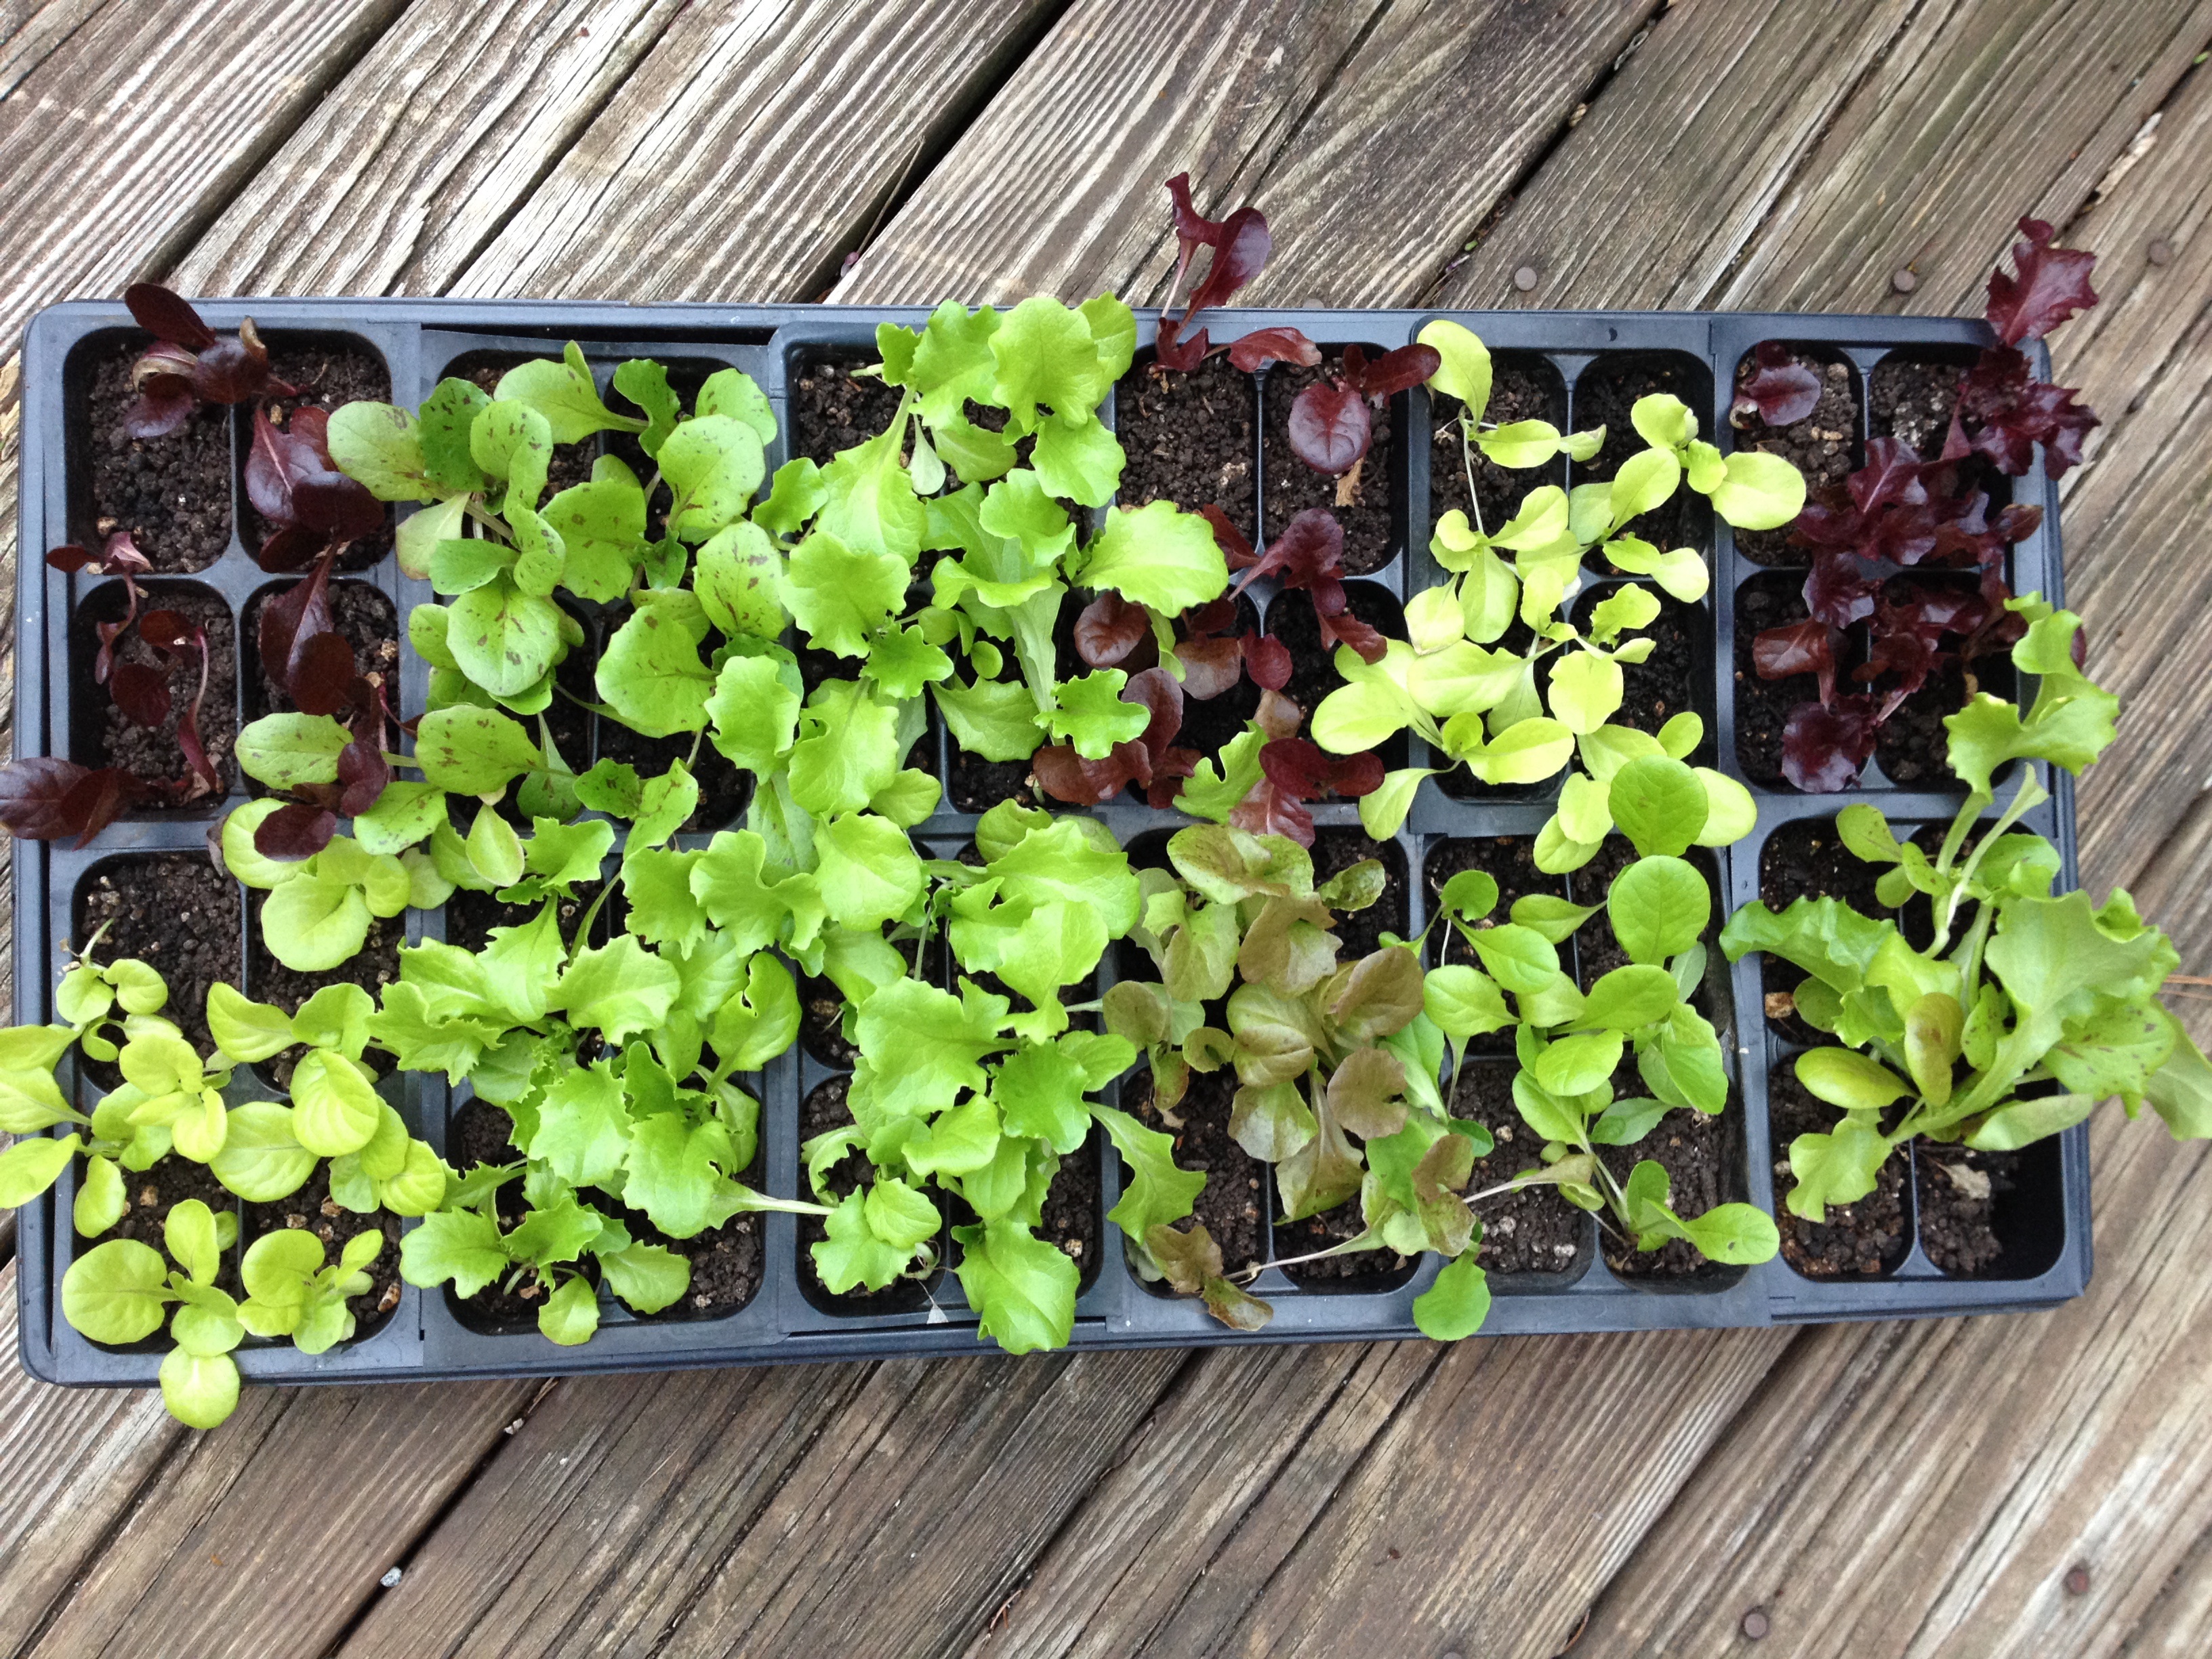 Hardening-off lettuce seedlings for transplanting